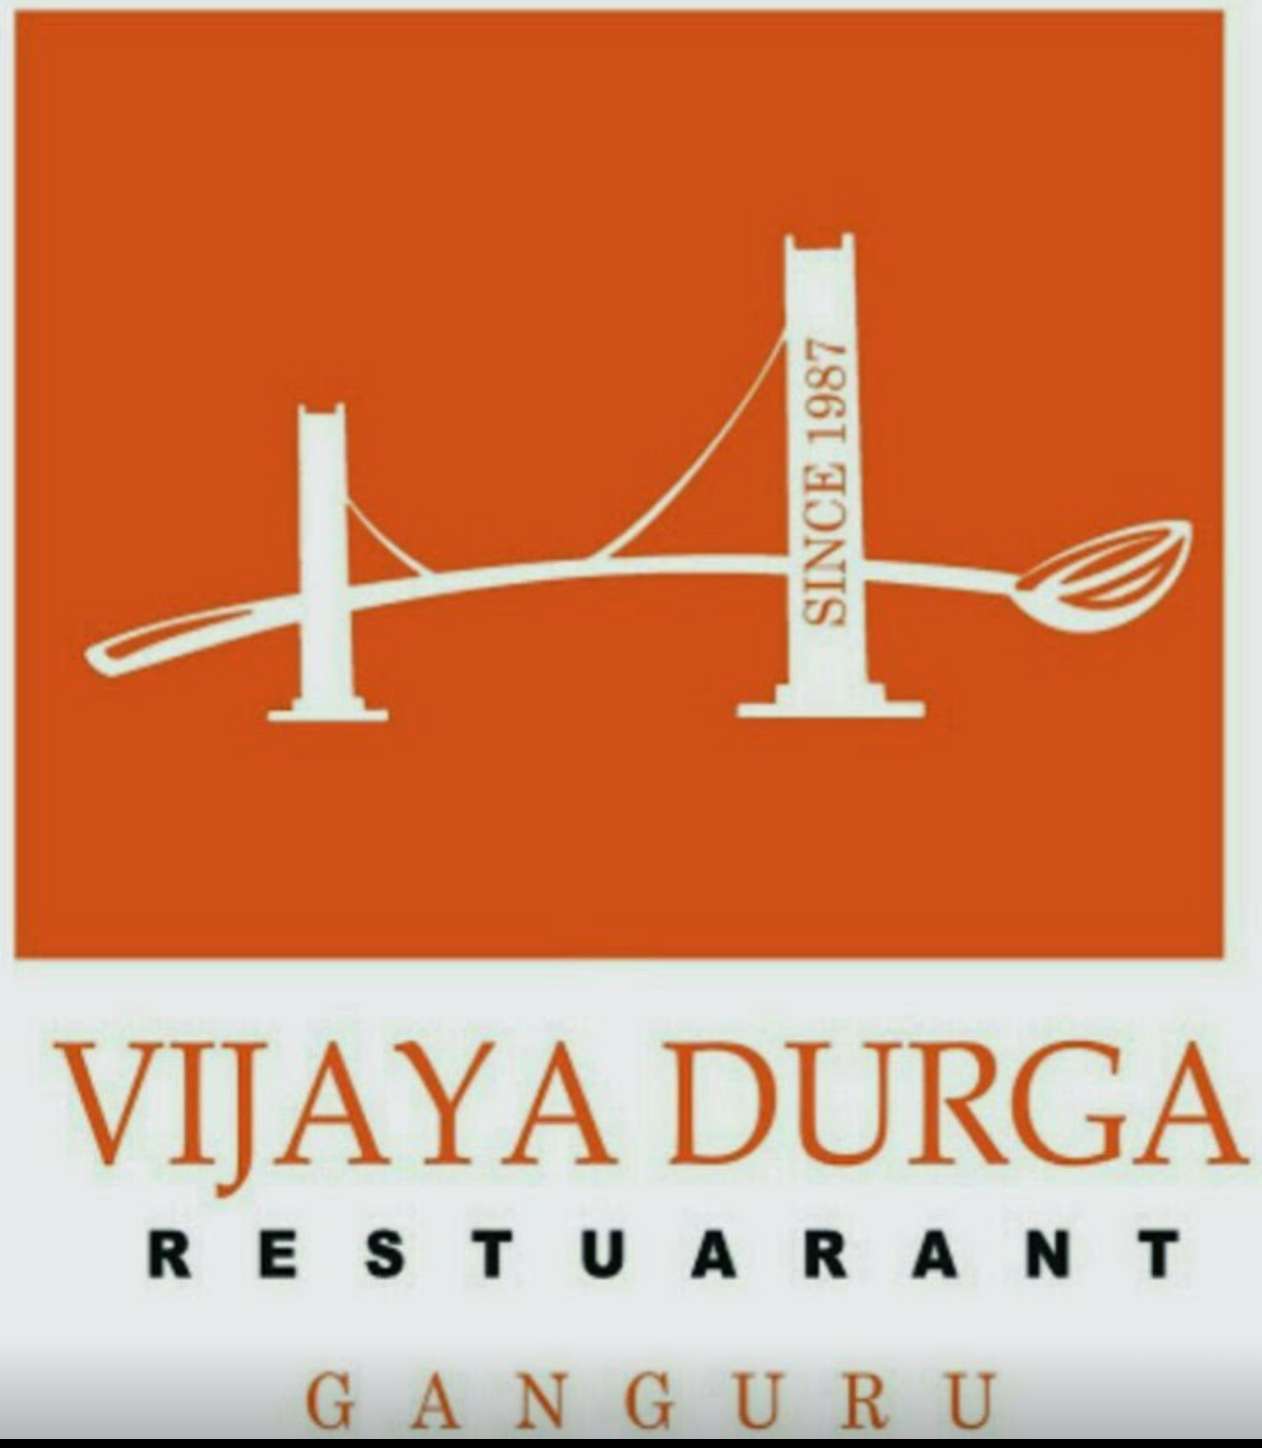 Vijaya Durga Restaurant